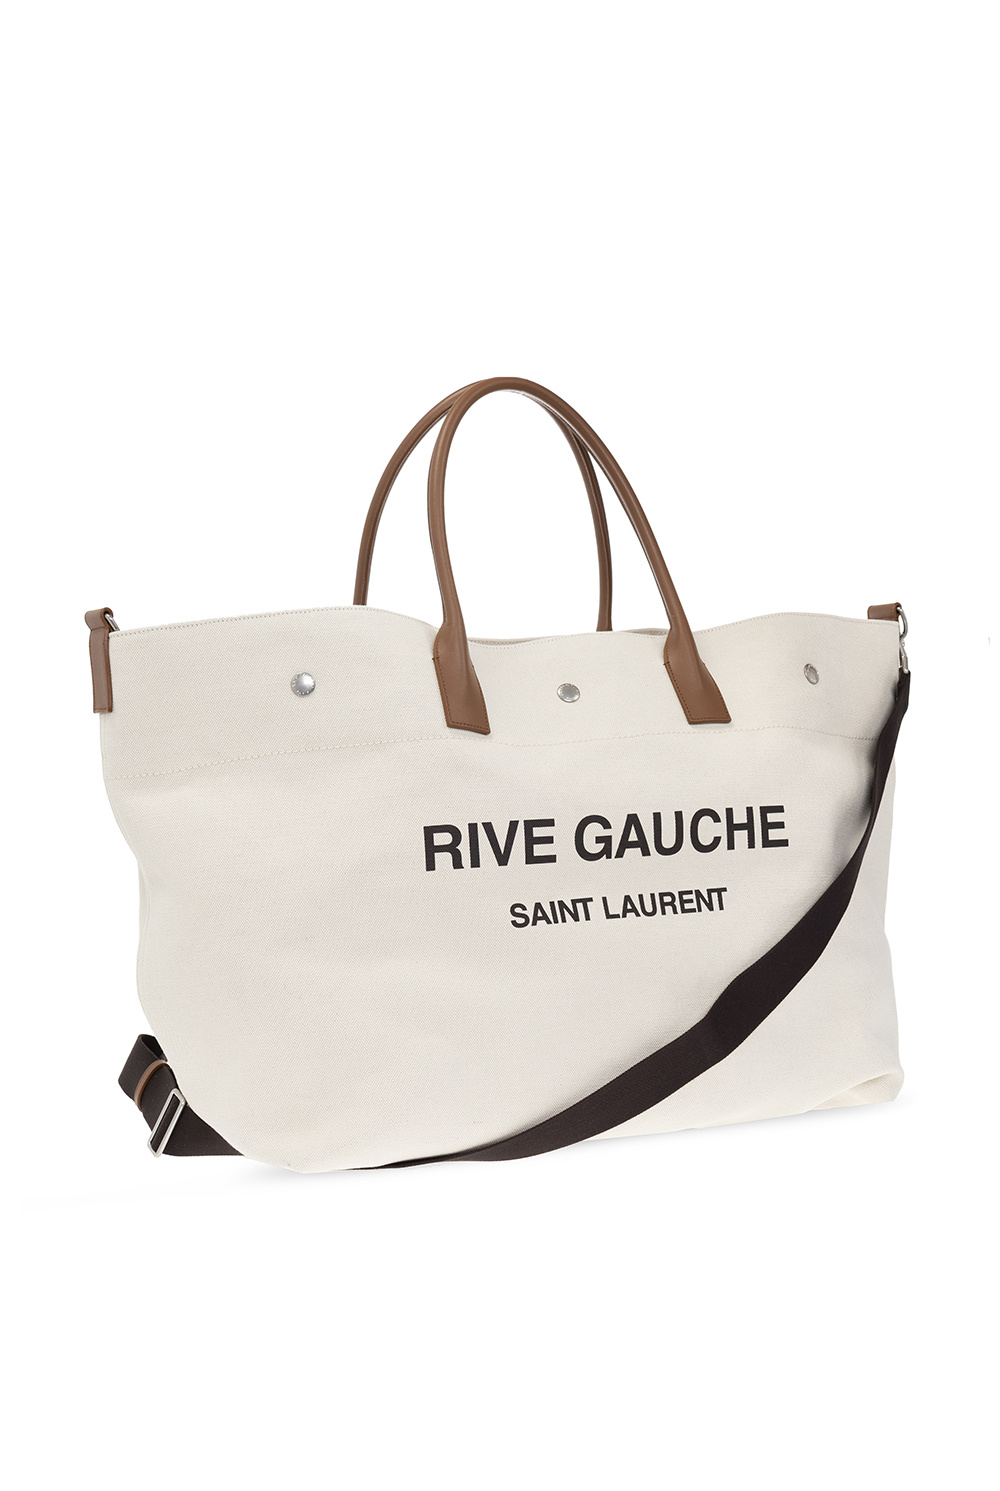 Rive Gauche Saint laurent Bag : r/DHgateRepSquad